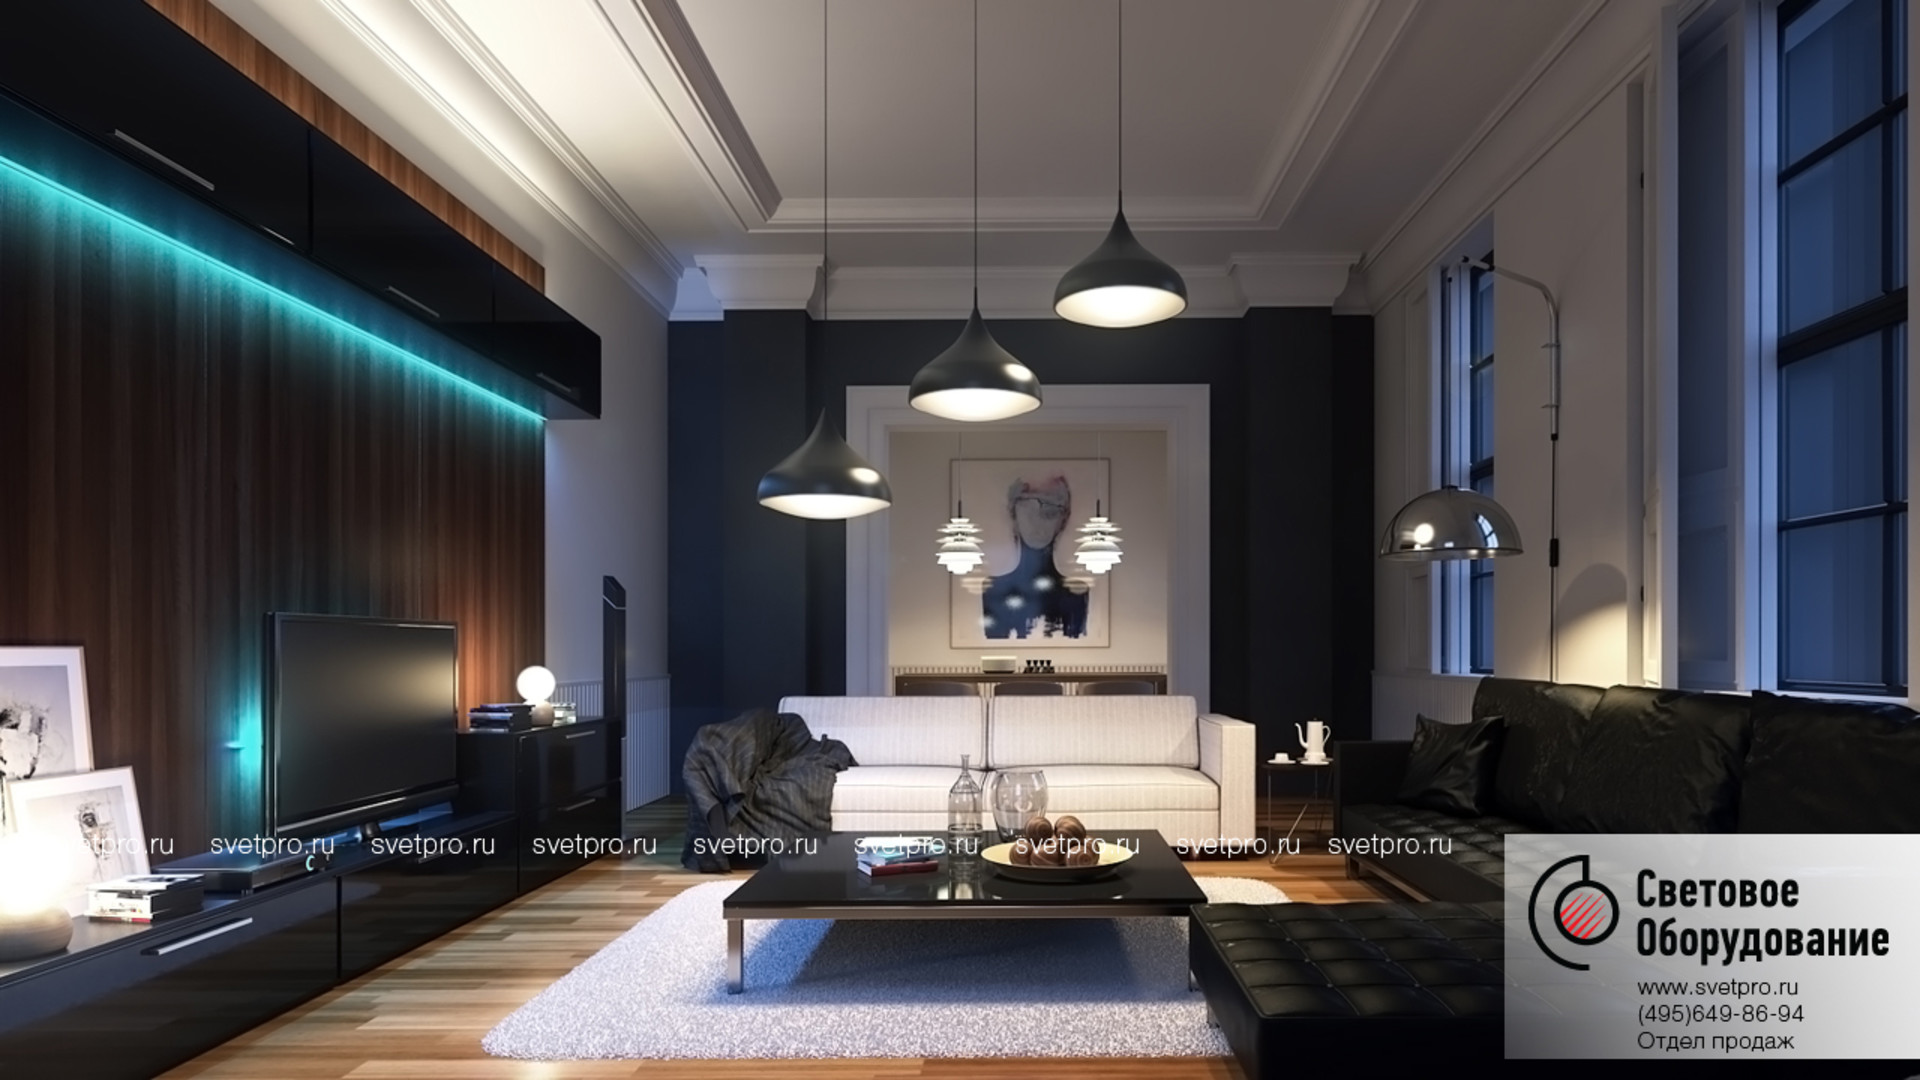 Проектирование света теплый свет. Рендер интерьера в 3ds Max. Interior Lighting 3ds Max. Современное освещение в интерьере. Подсветка в интерьере квартиры.